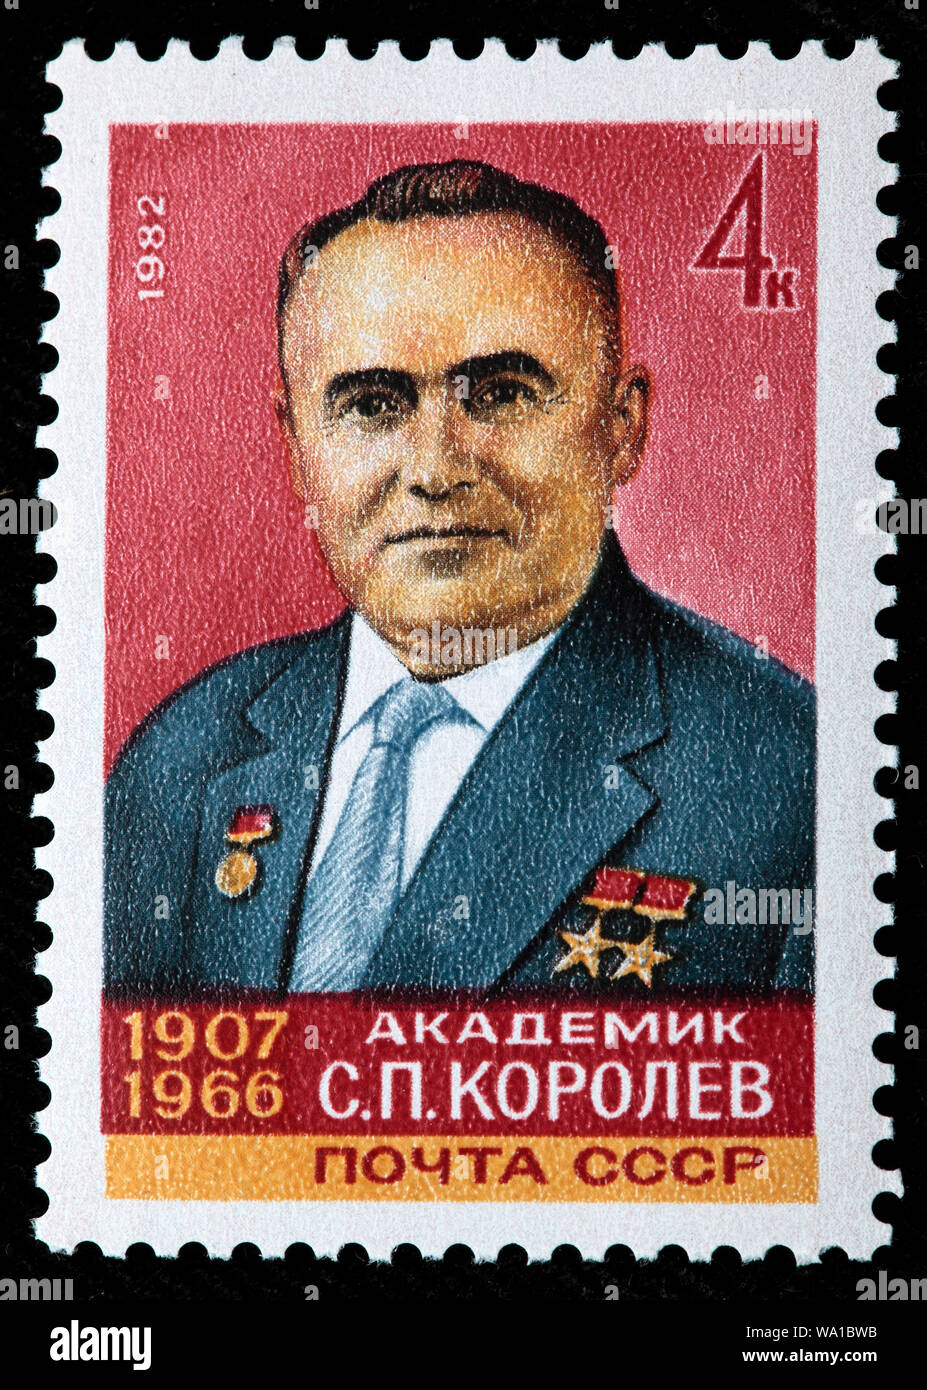 Sergei Korolev (1907-1966), Soviet rocket engineer, spacecraft designer, postage stamp, Russia, USSR, 1982 Stock Photo